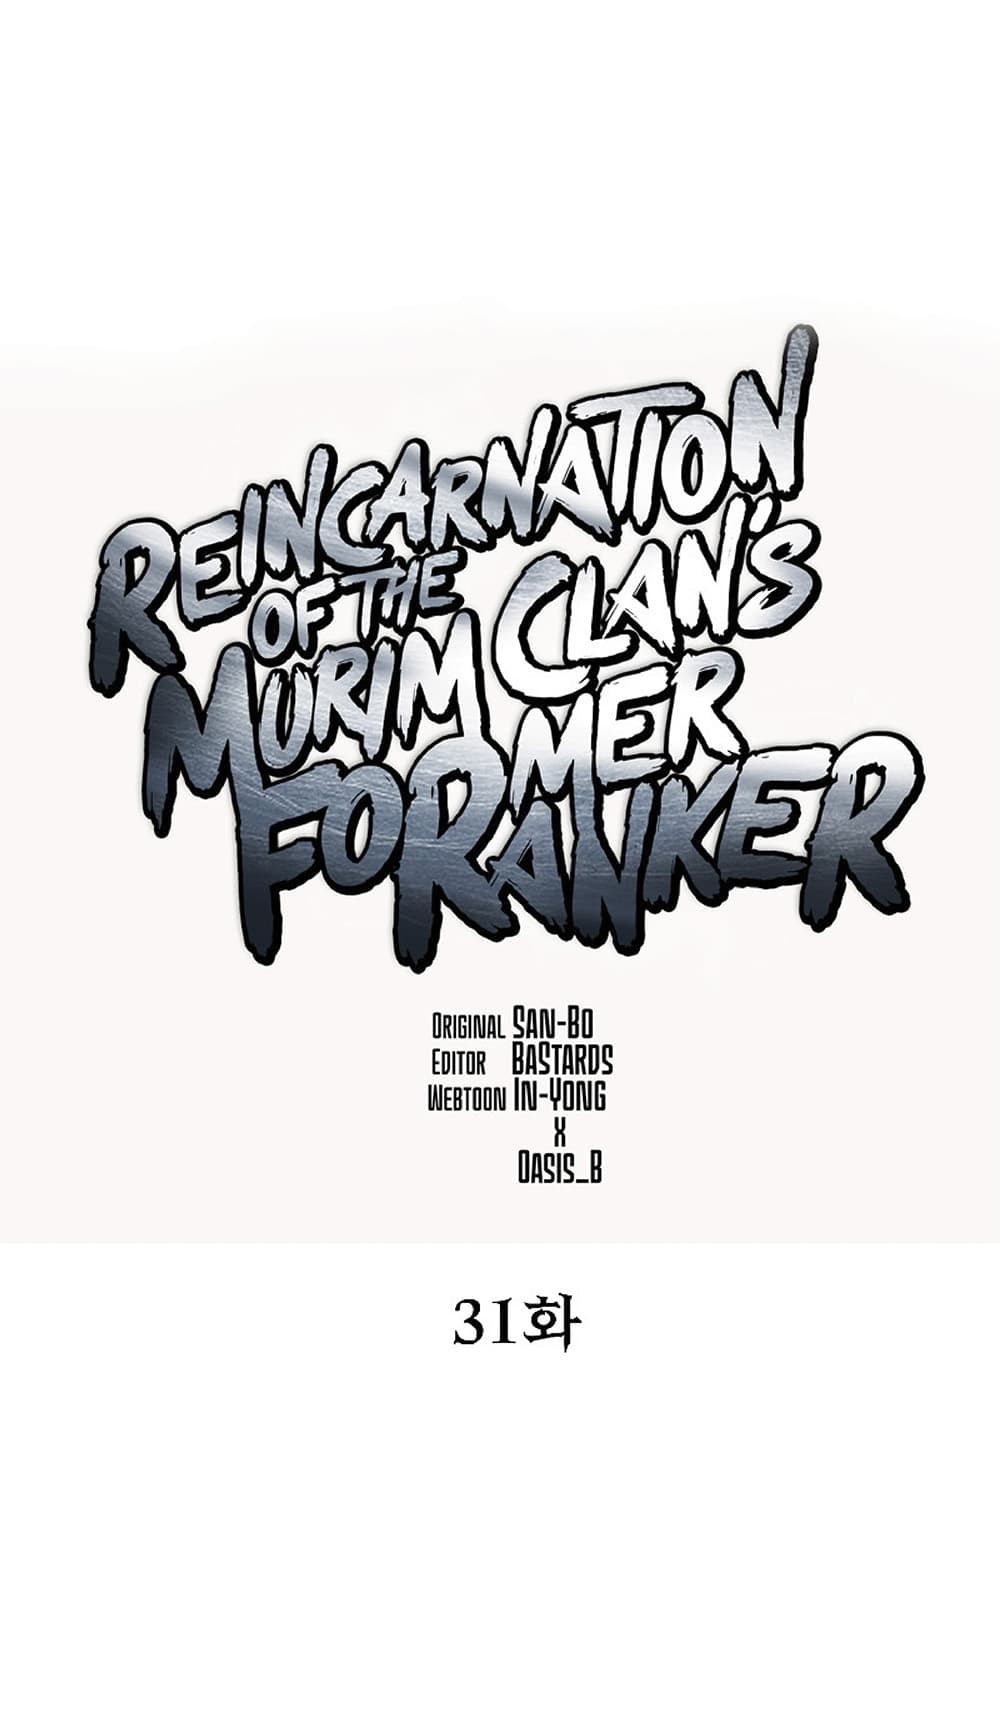 Reincarnation-of-the-Murim-Clans-Former-Ranker-31_26.jpg